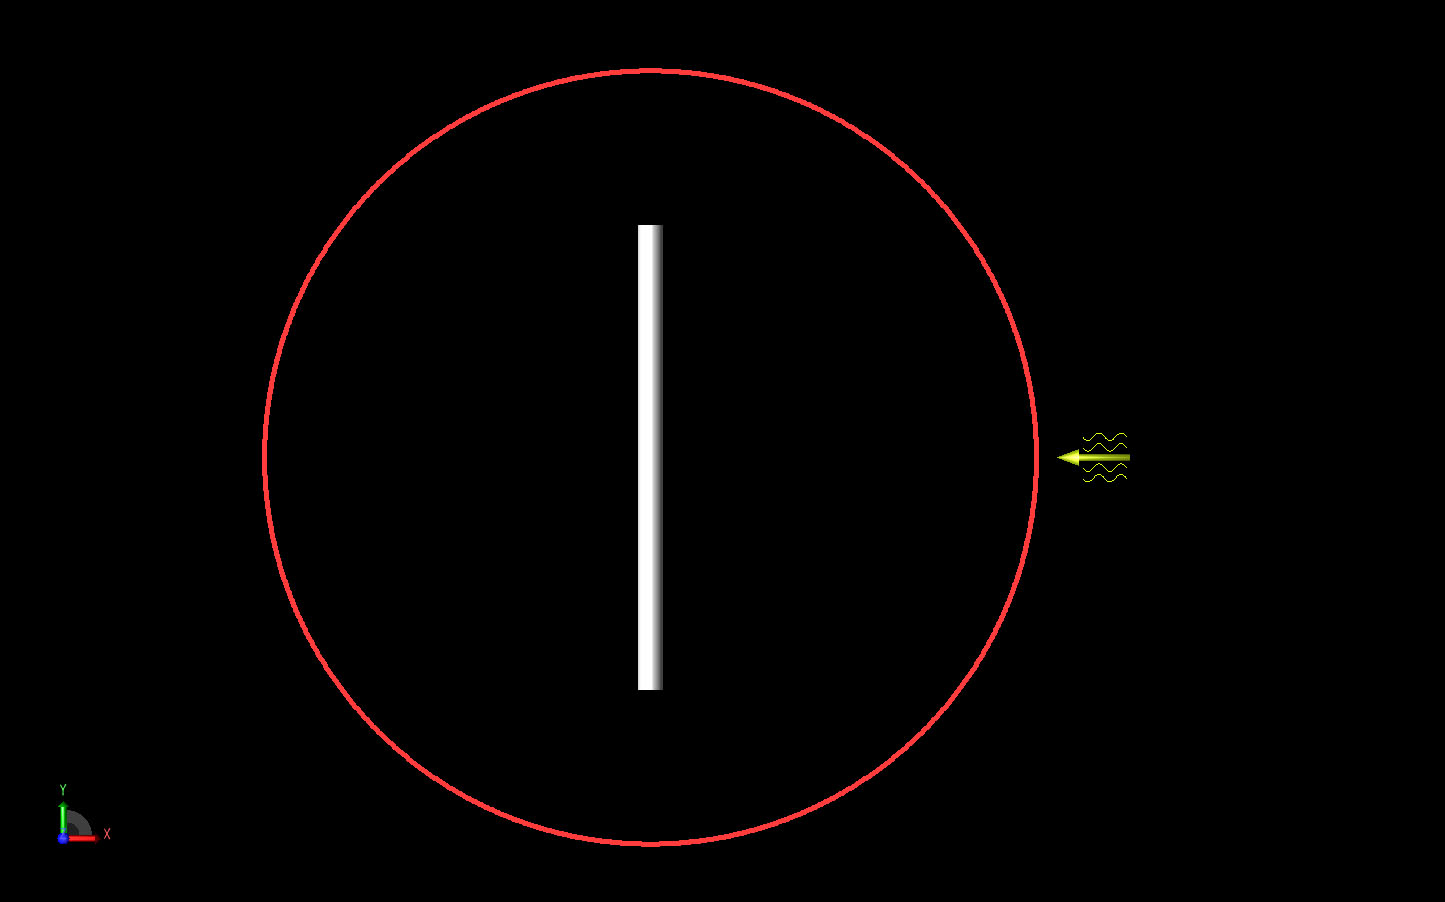 図1円柱の形状をY軸に沿って示す。入射平面波は右側の黄色い矢印で示されている。赤い円は、XY平面で計算される遠視野パターンを示す。